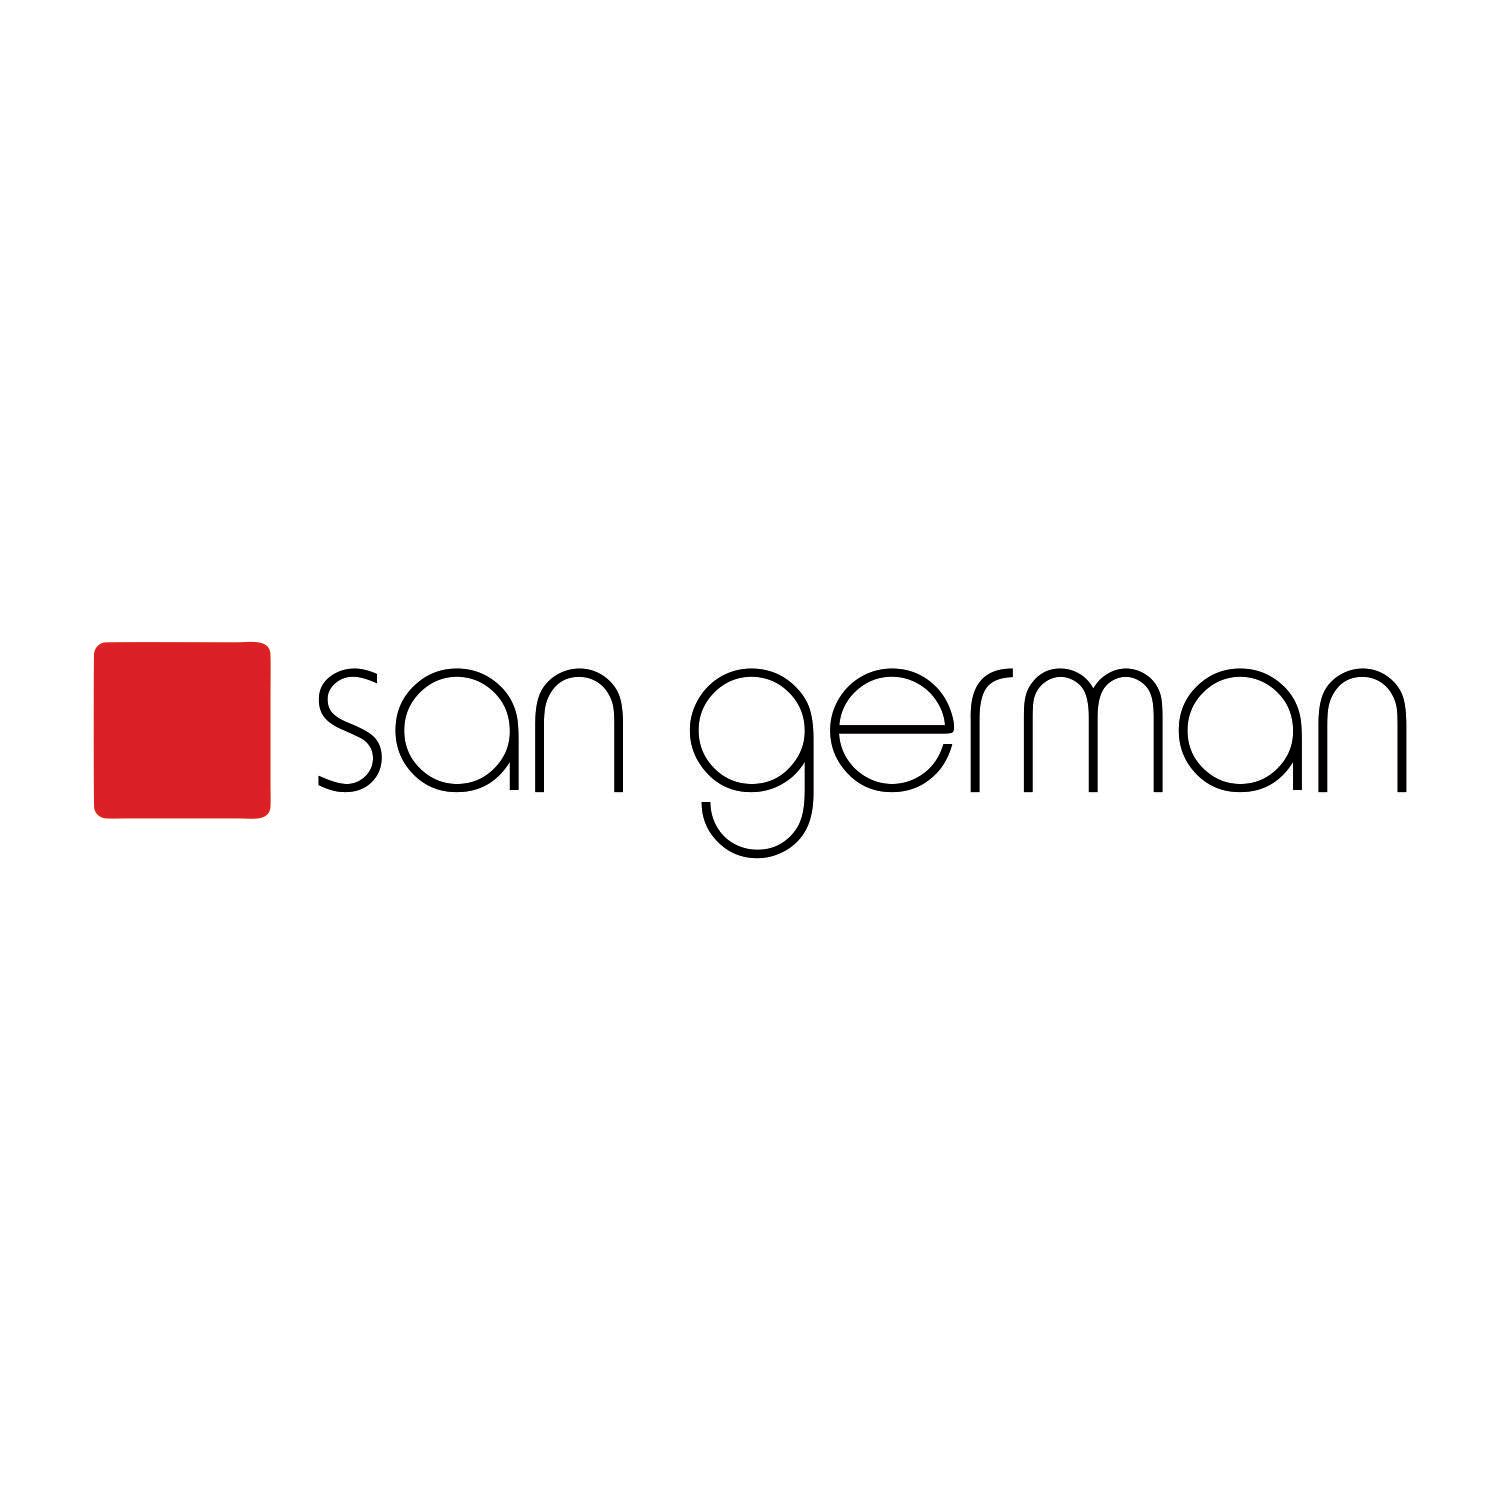 O logotipo da San German é vermelho e preto sobre fundo branco.